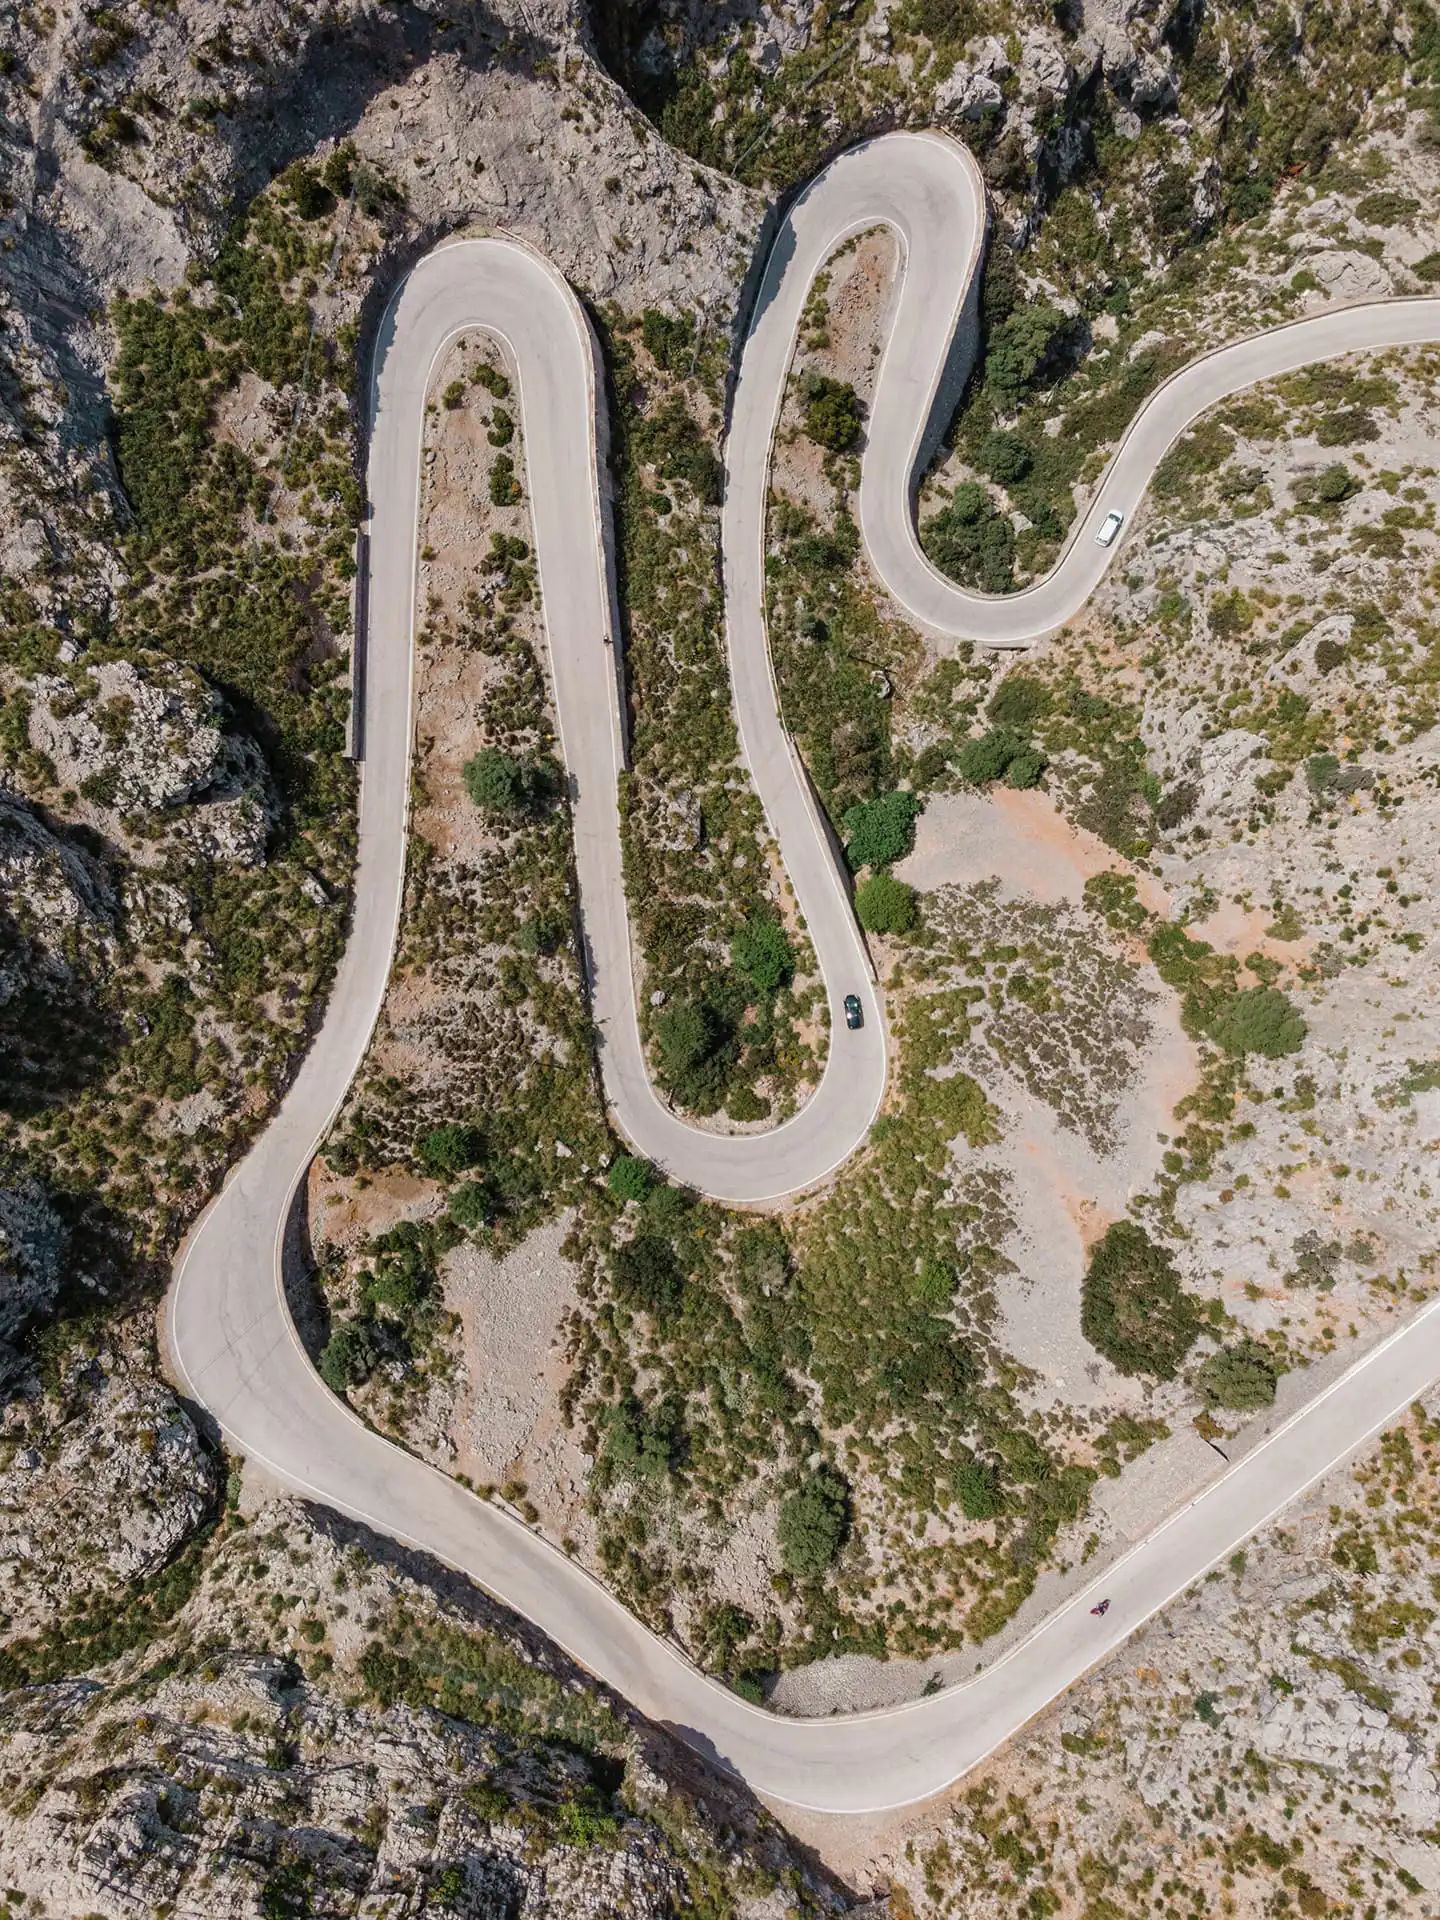 Ma-2141 à Majorque, route sinuseuse entre les montagnes arides. Vue drone